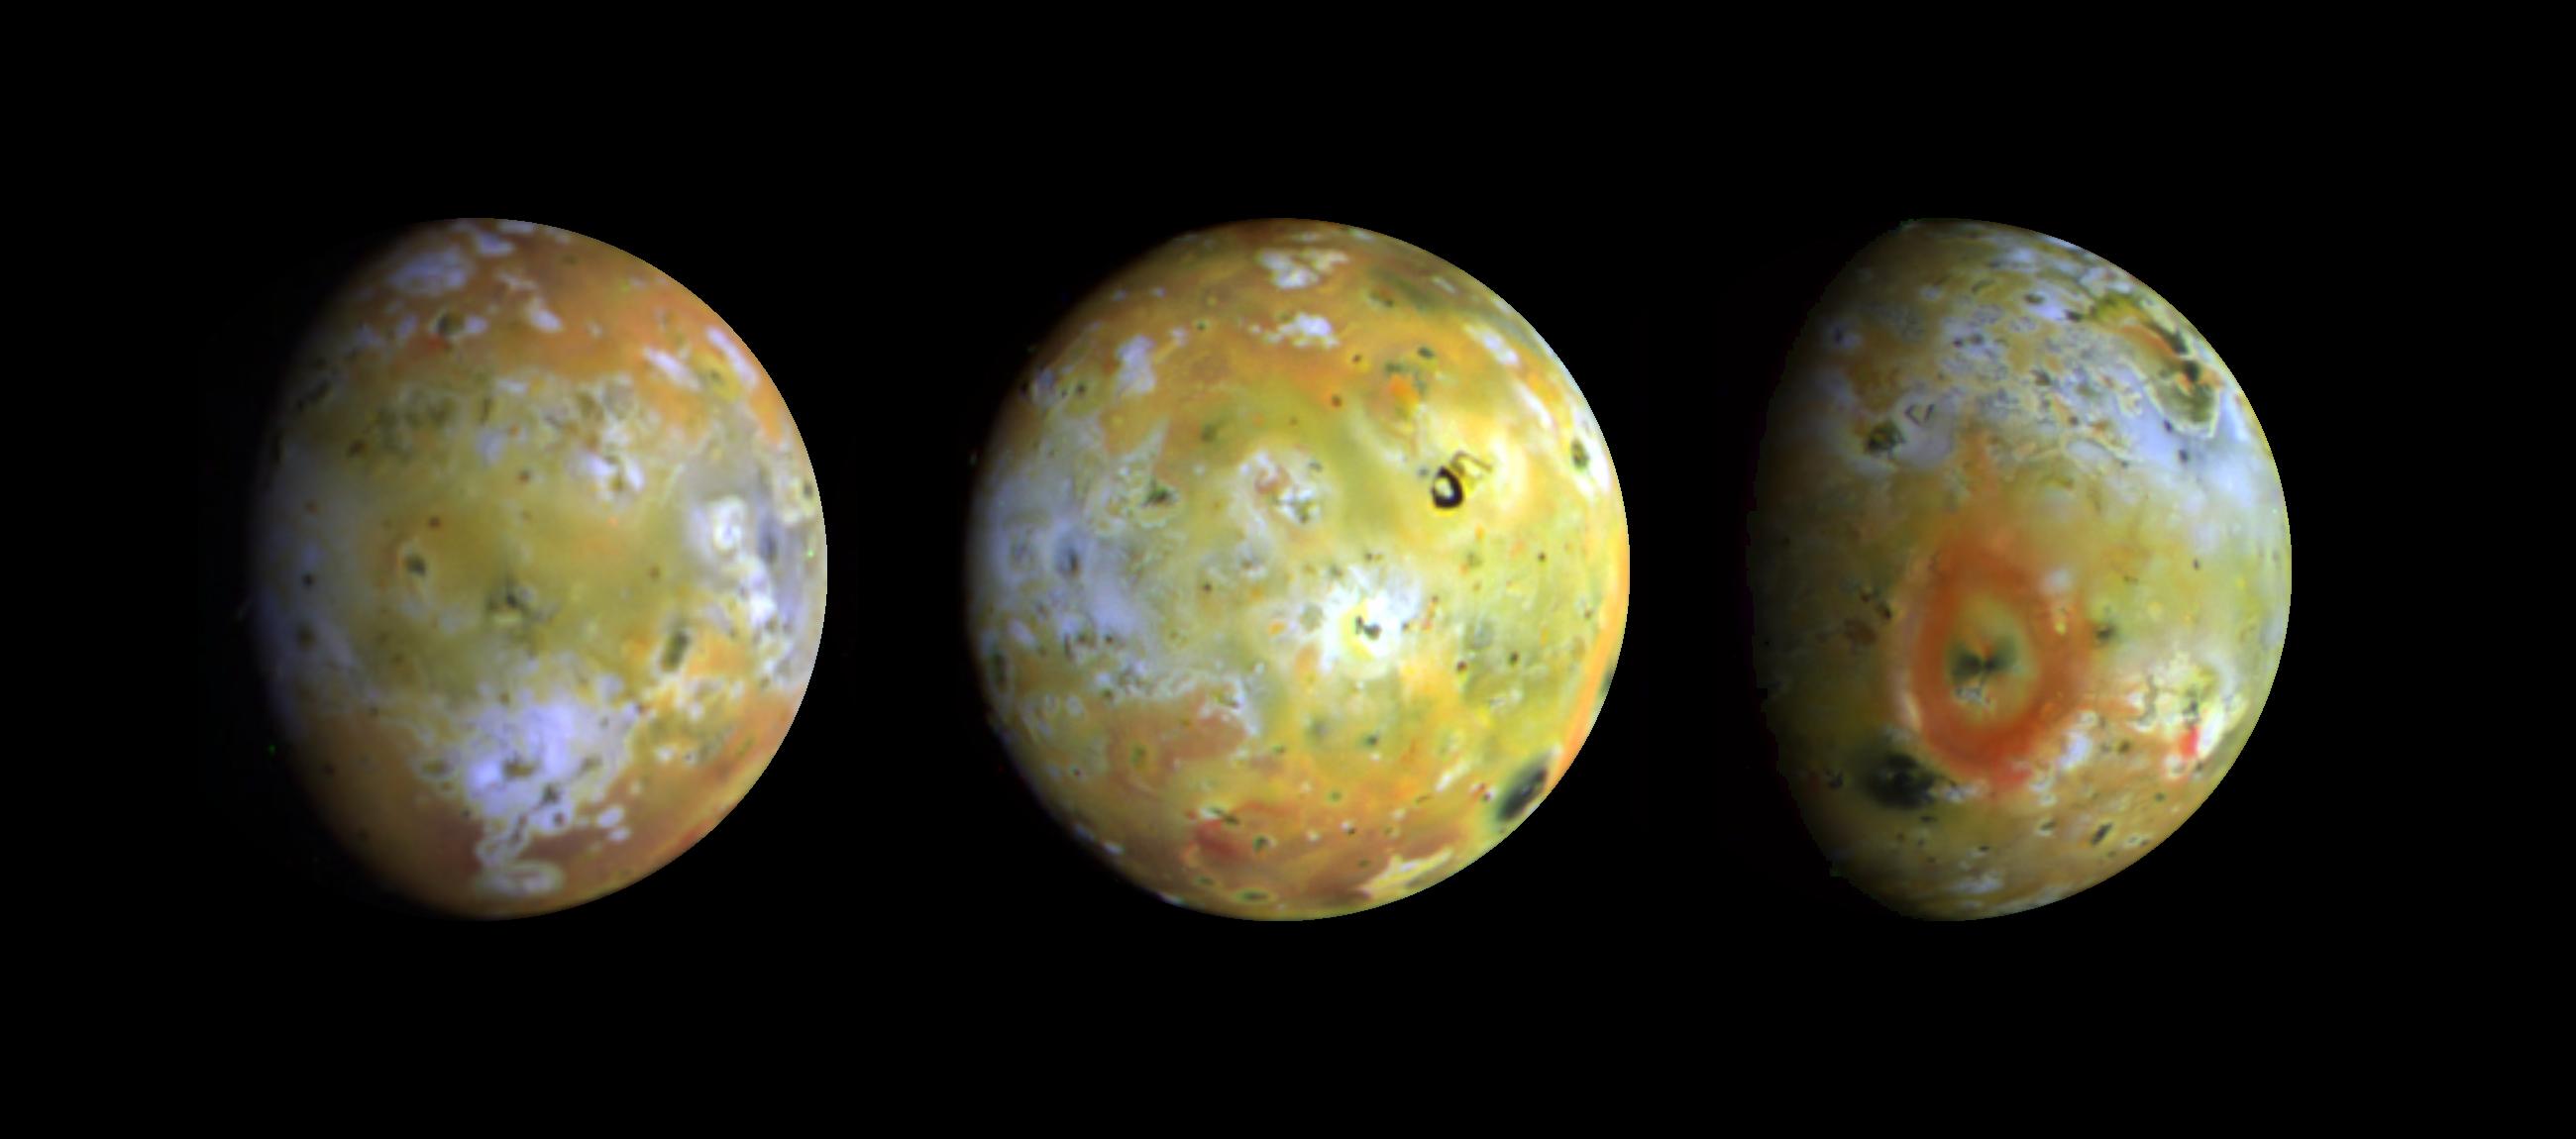 Der Jupitermond Io ist der vulkanisch aktivste Körper im Sonnensystem